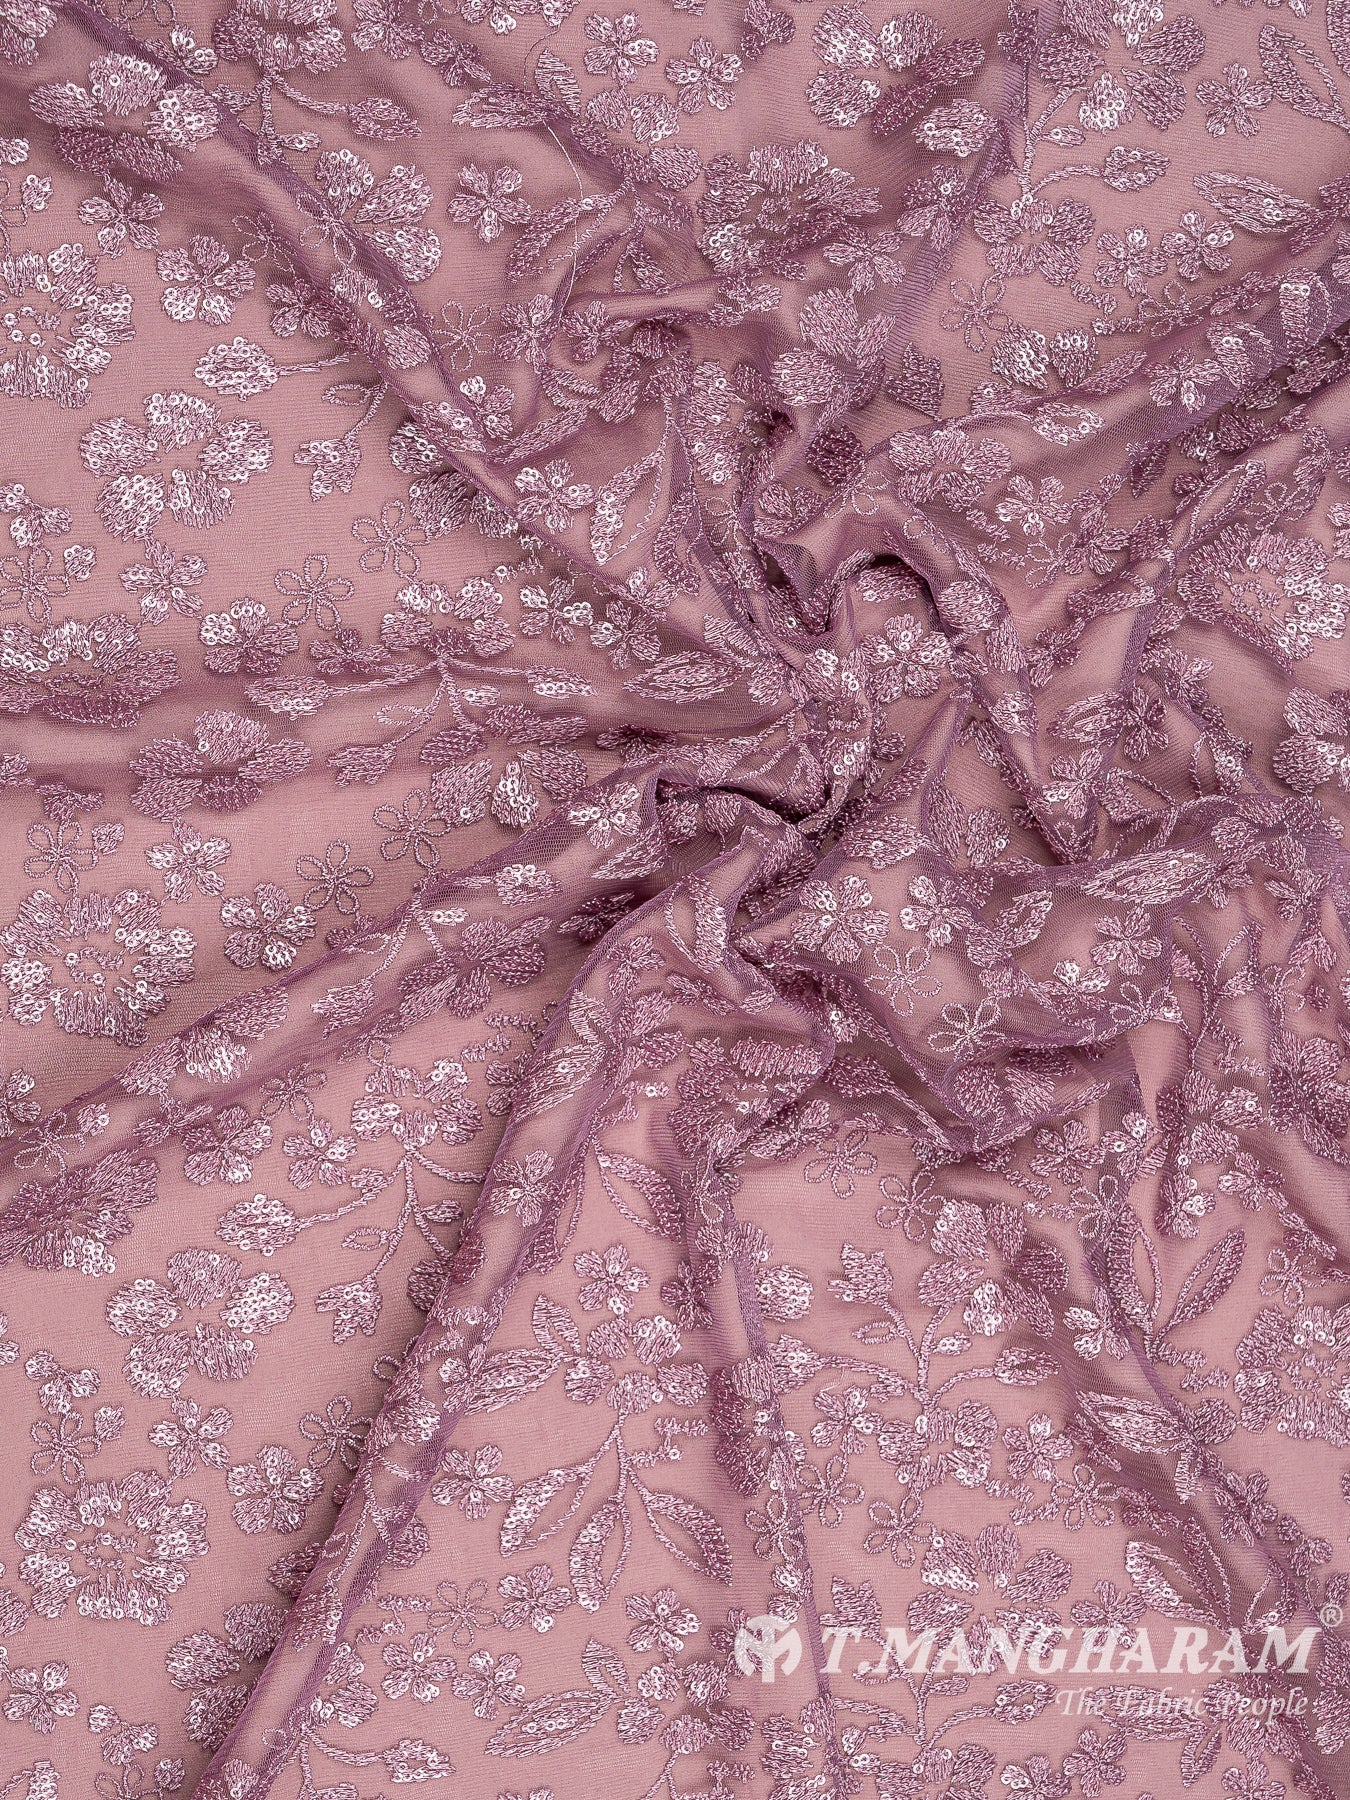 Violet Fancy Net Fabric - EC8104